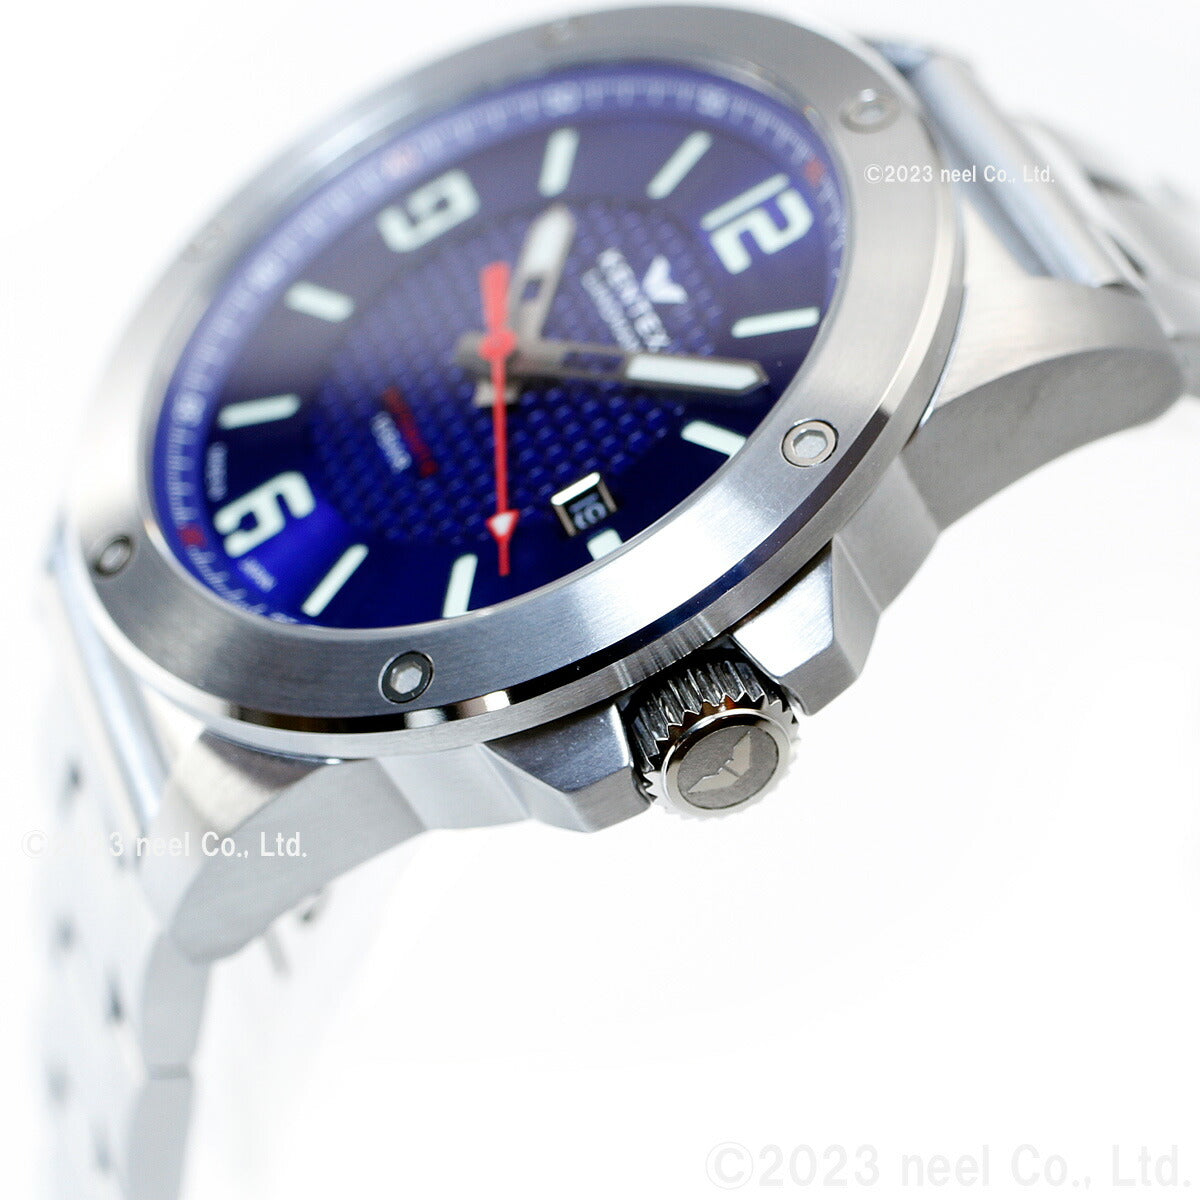 ケンテックス KENTEX 限定モデル 腕時計 時計 メンズ ランドマン アドベンチャー デイト 日本製 S763X-3